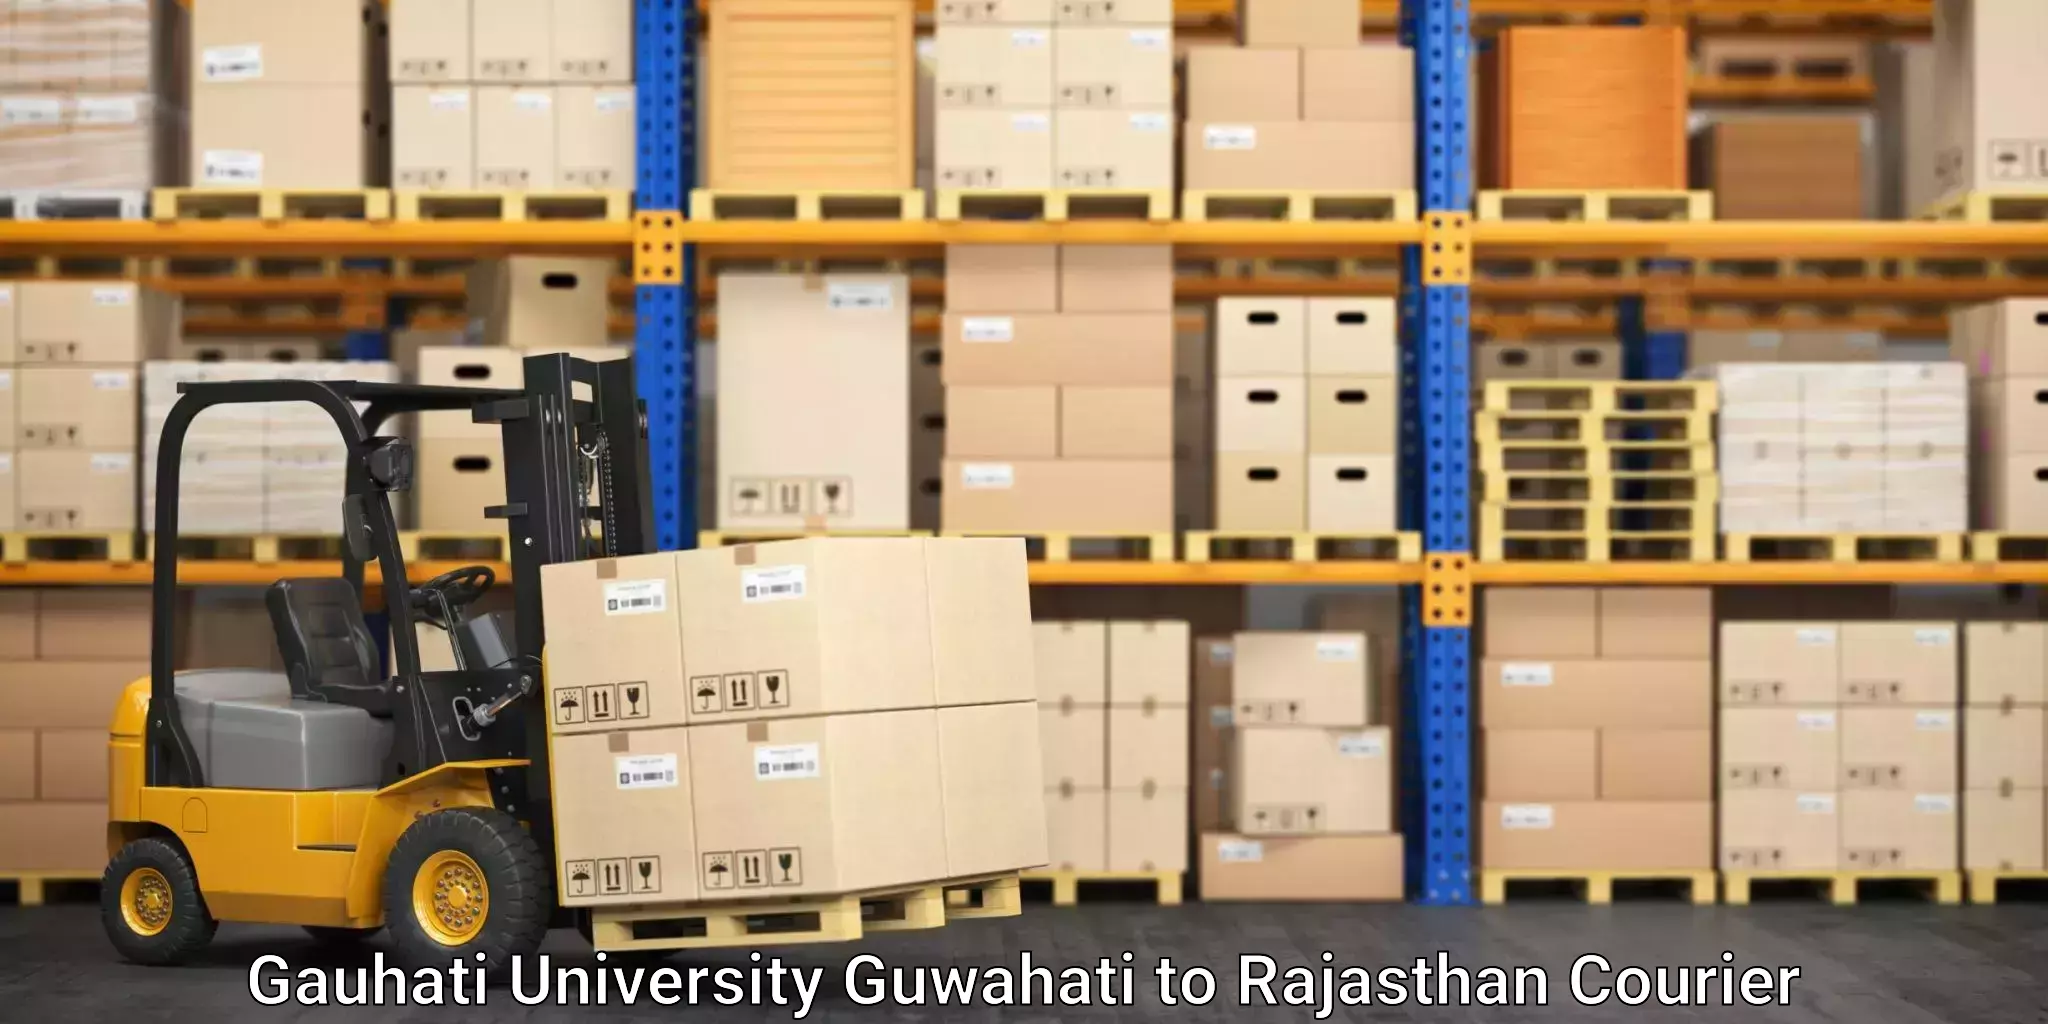 Ocean freight courier Gauhati University Guwahati to Sambhar